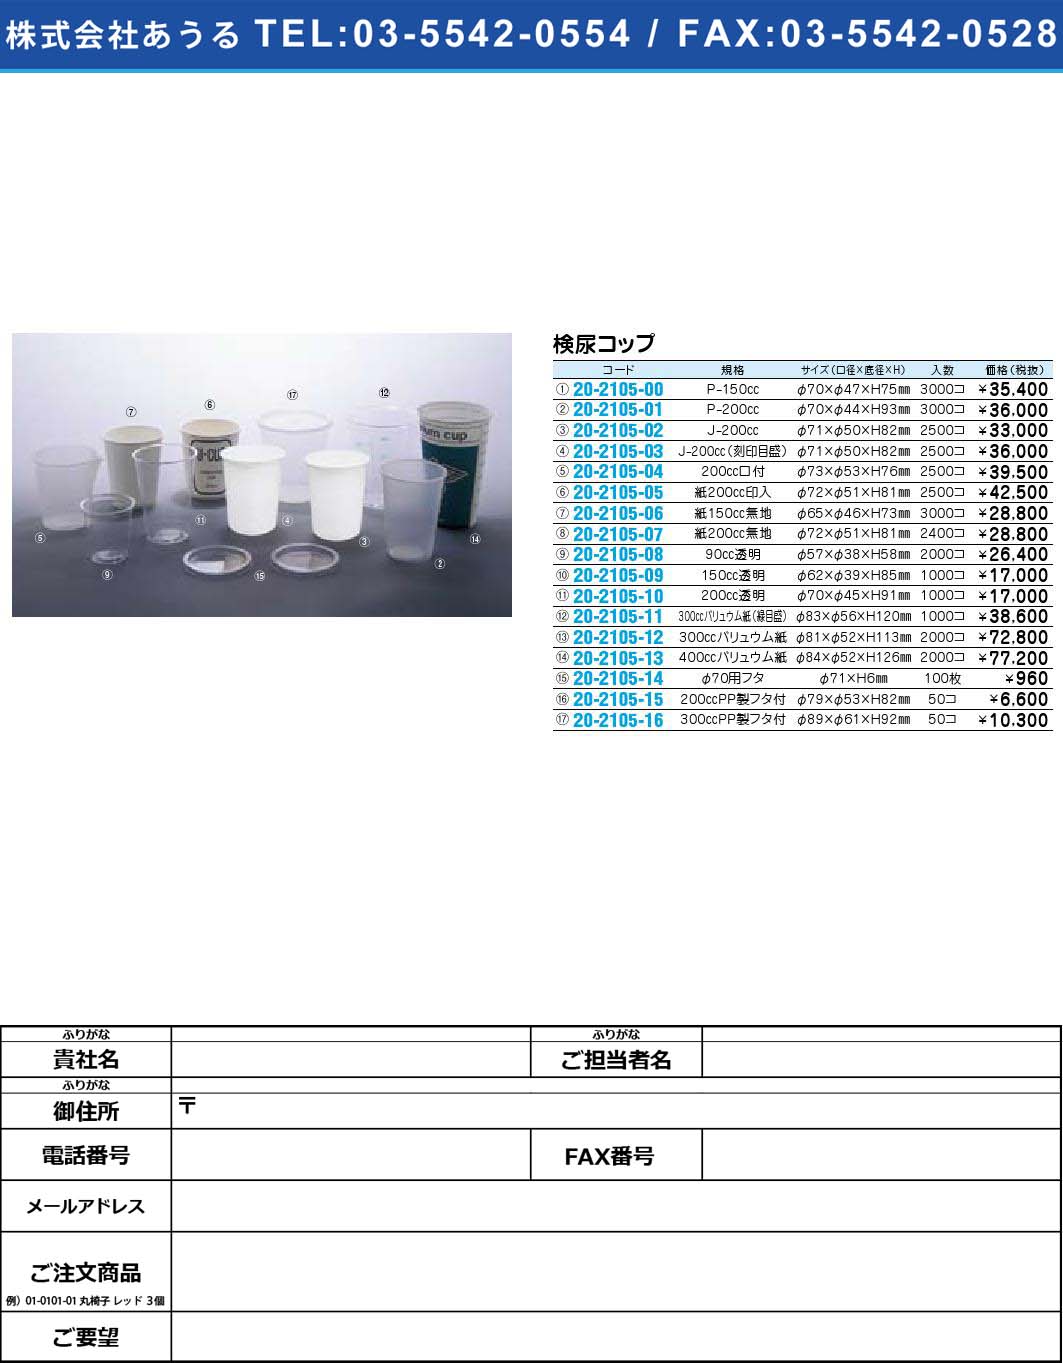 検尿コップ 【1単位】(20-2105-07)